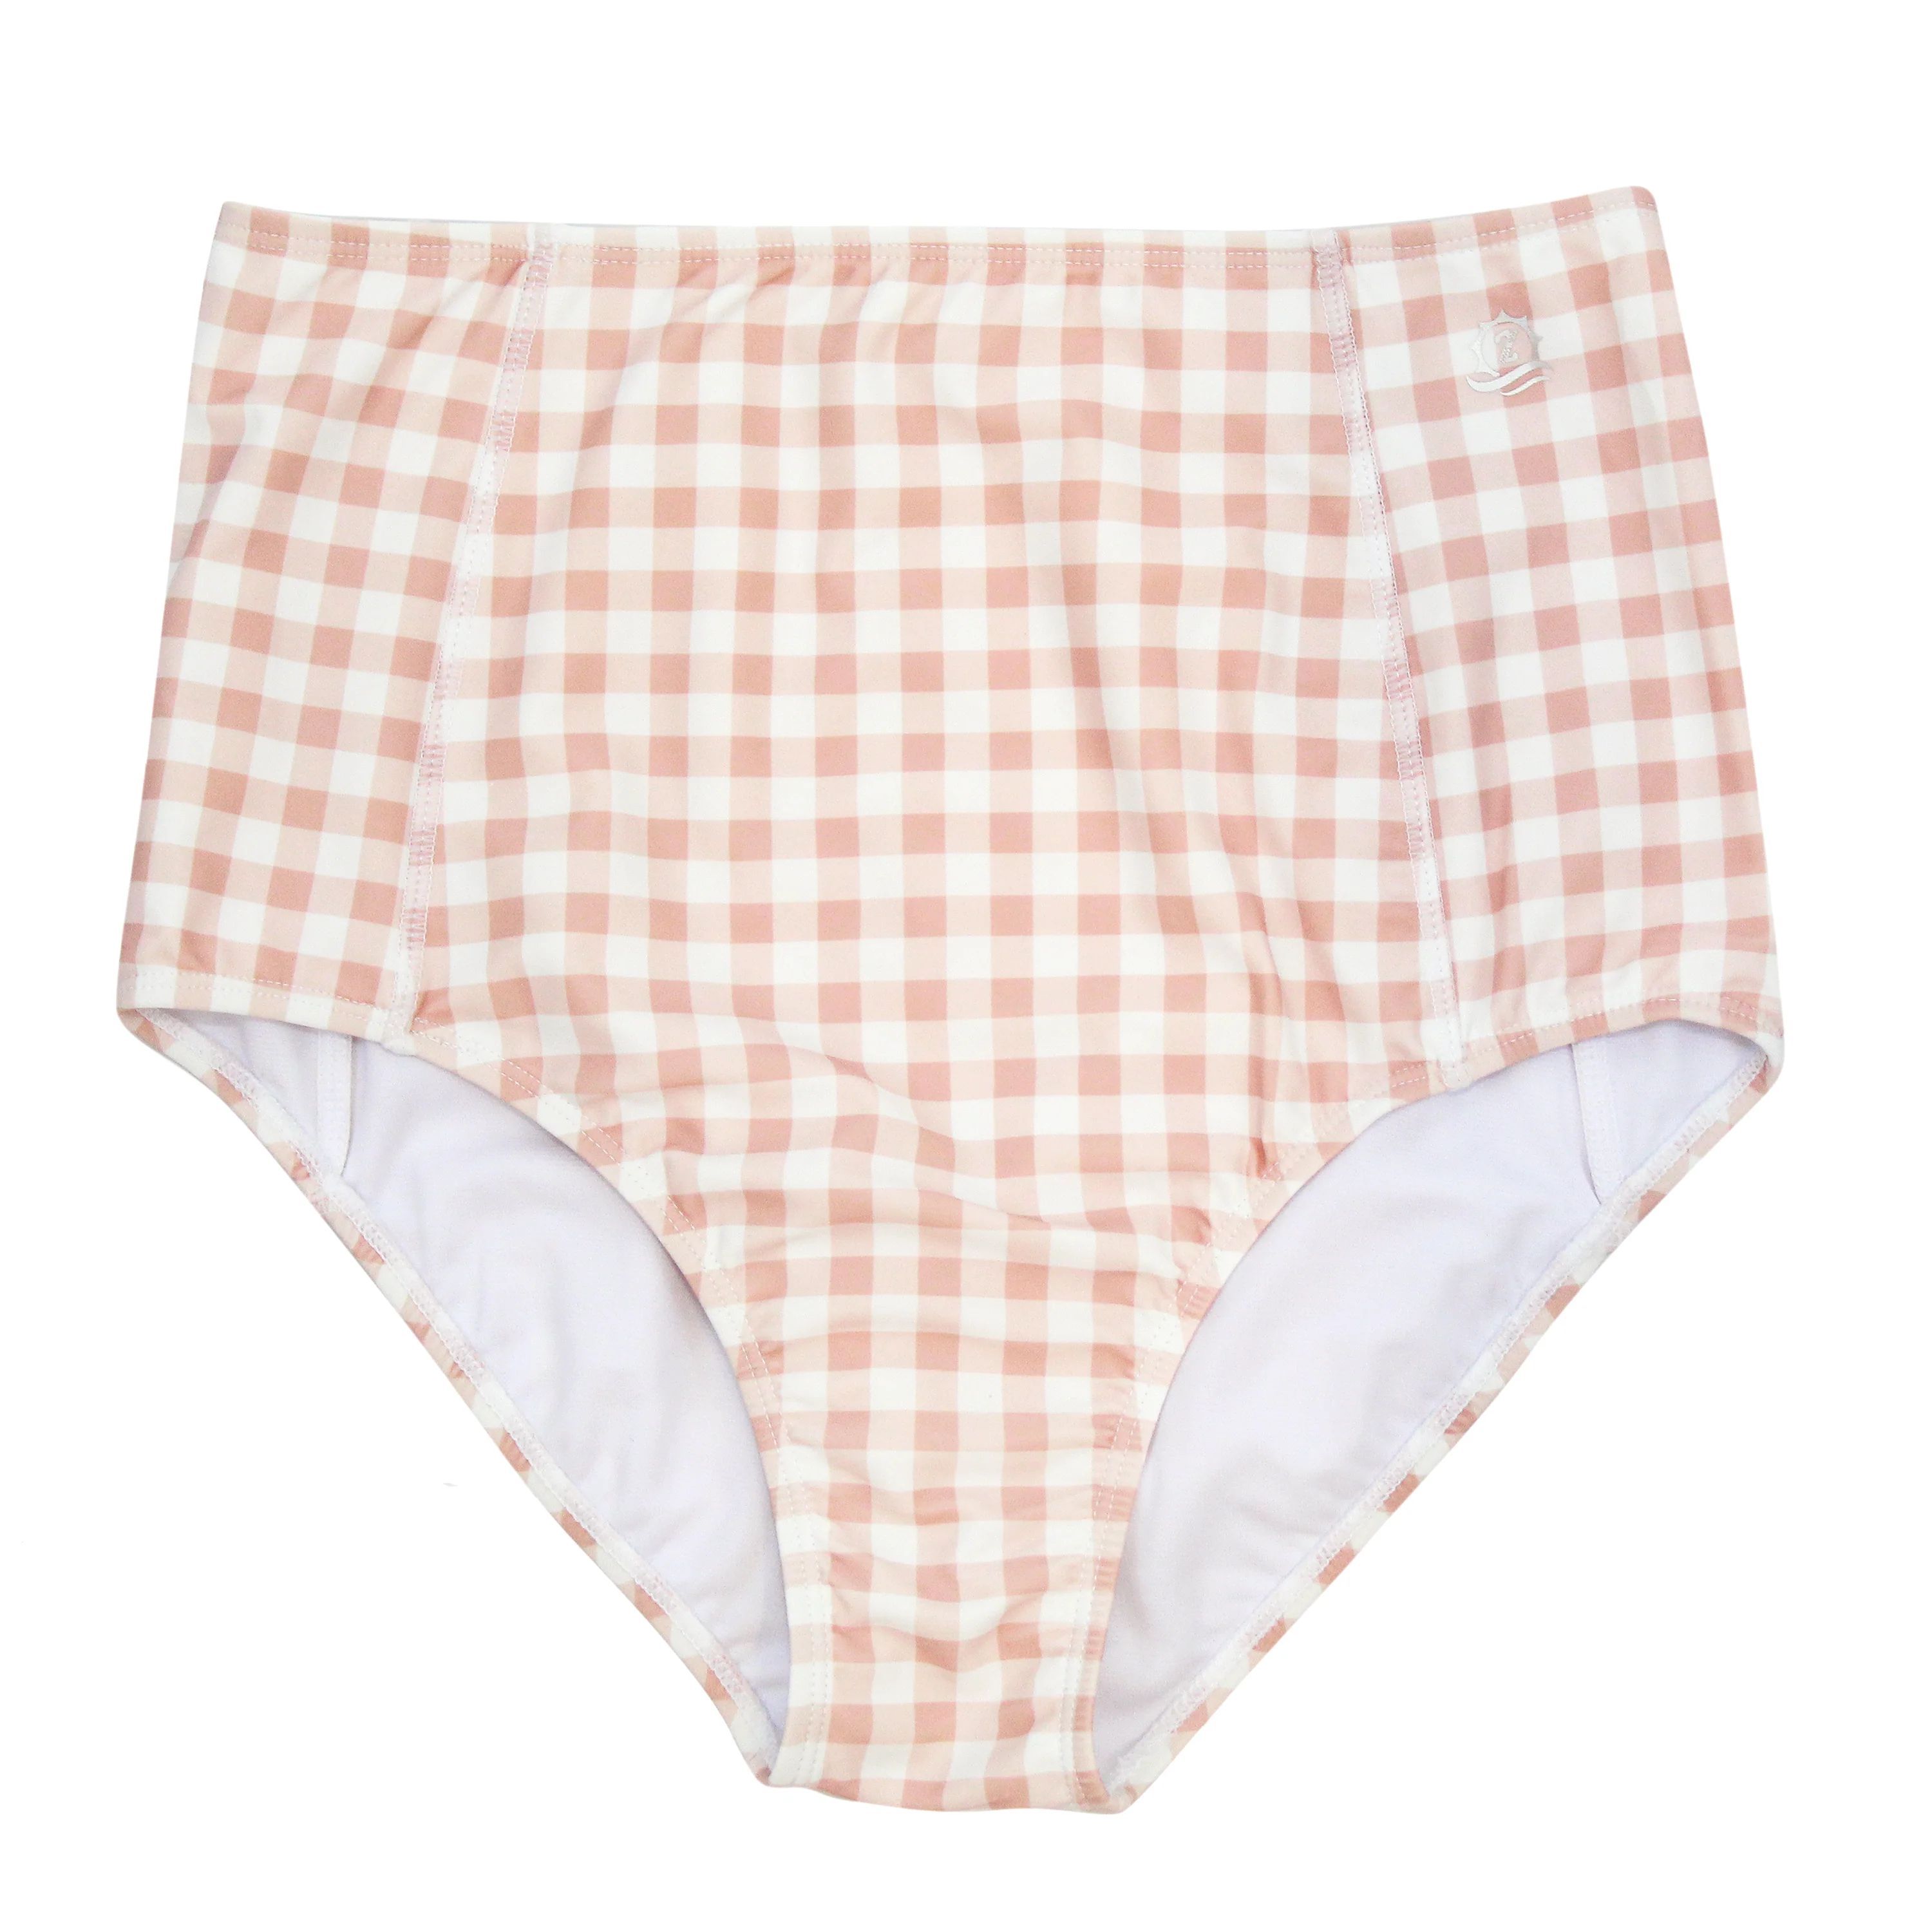 Women's High Waist Bikini Swim Bottoms | "Pink Gingham" | UPF 50+ Protection | SwimZip